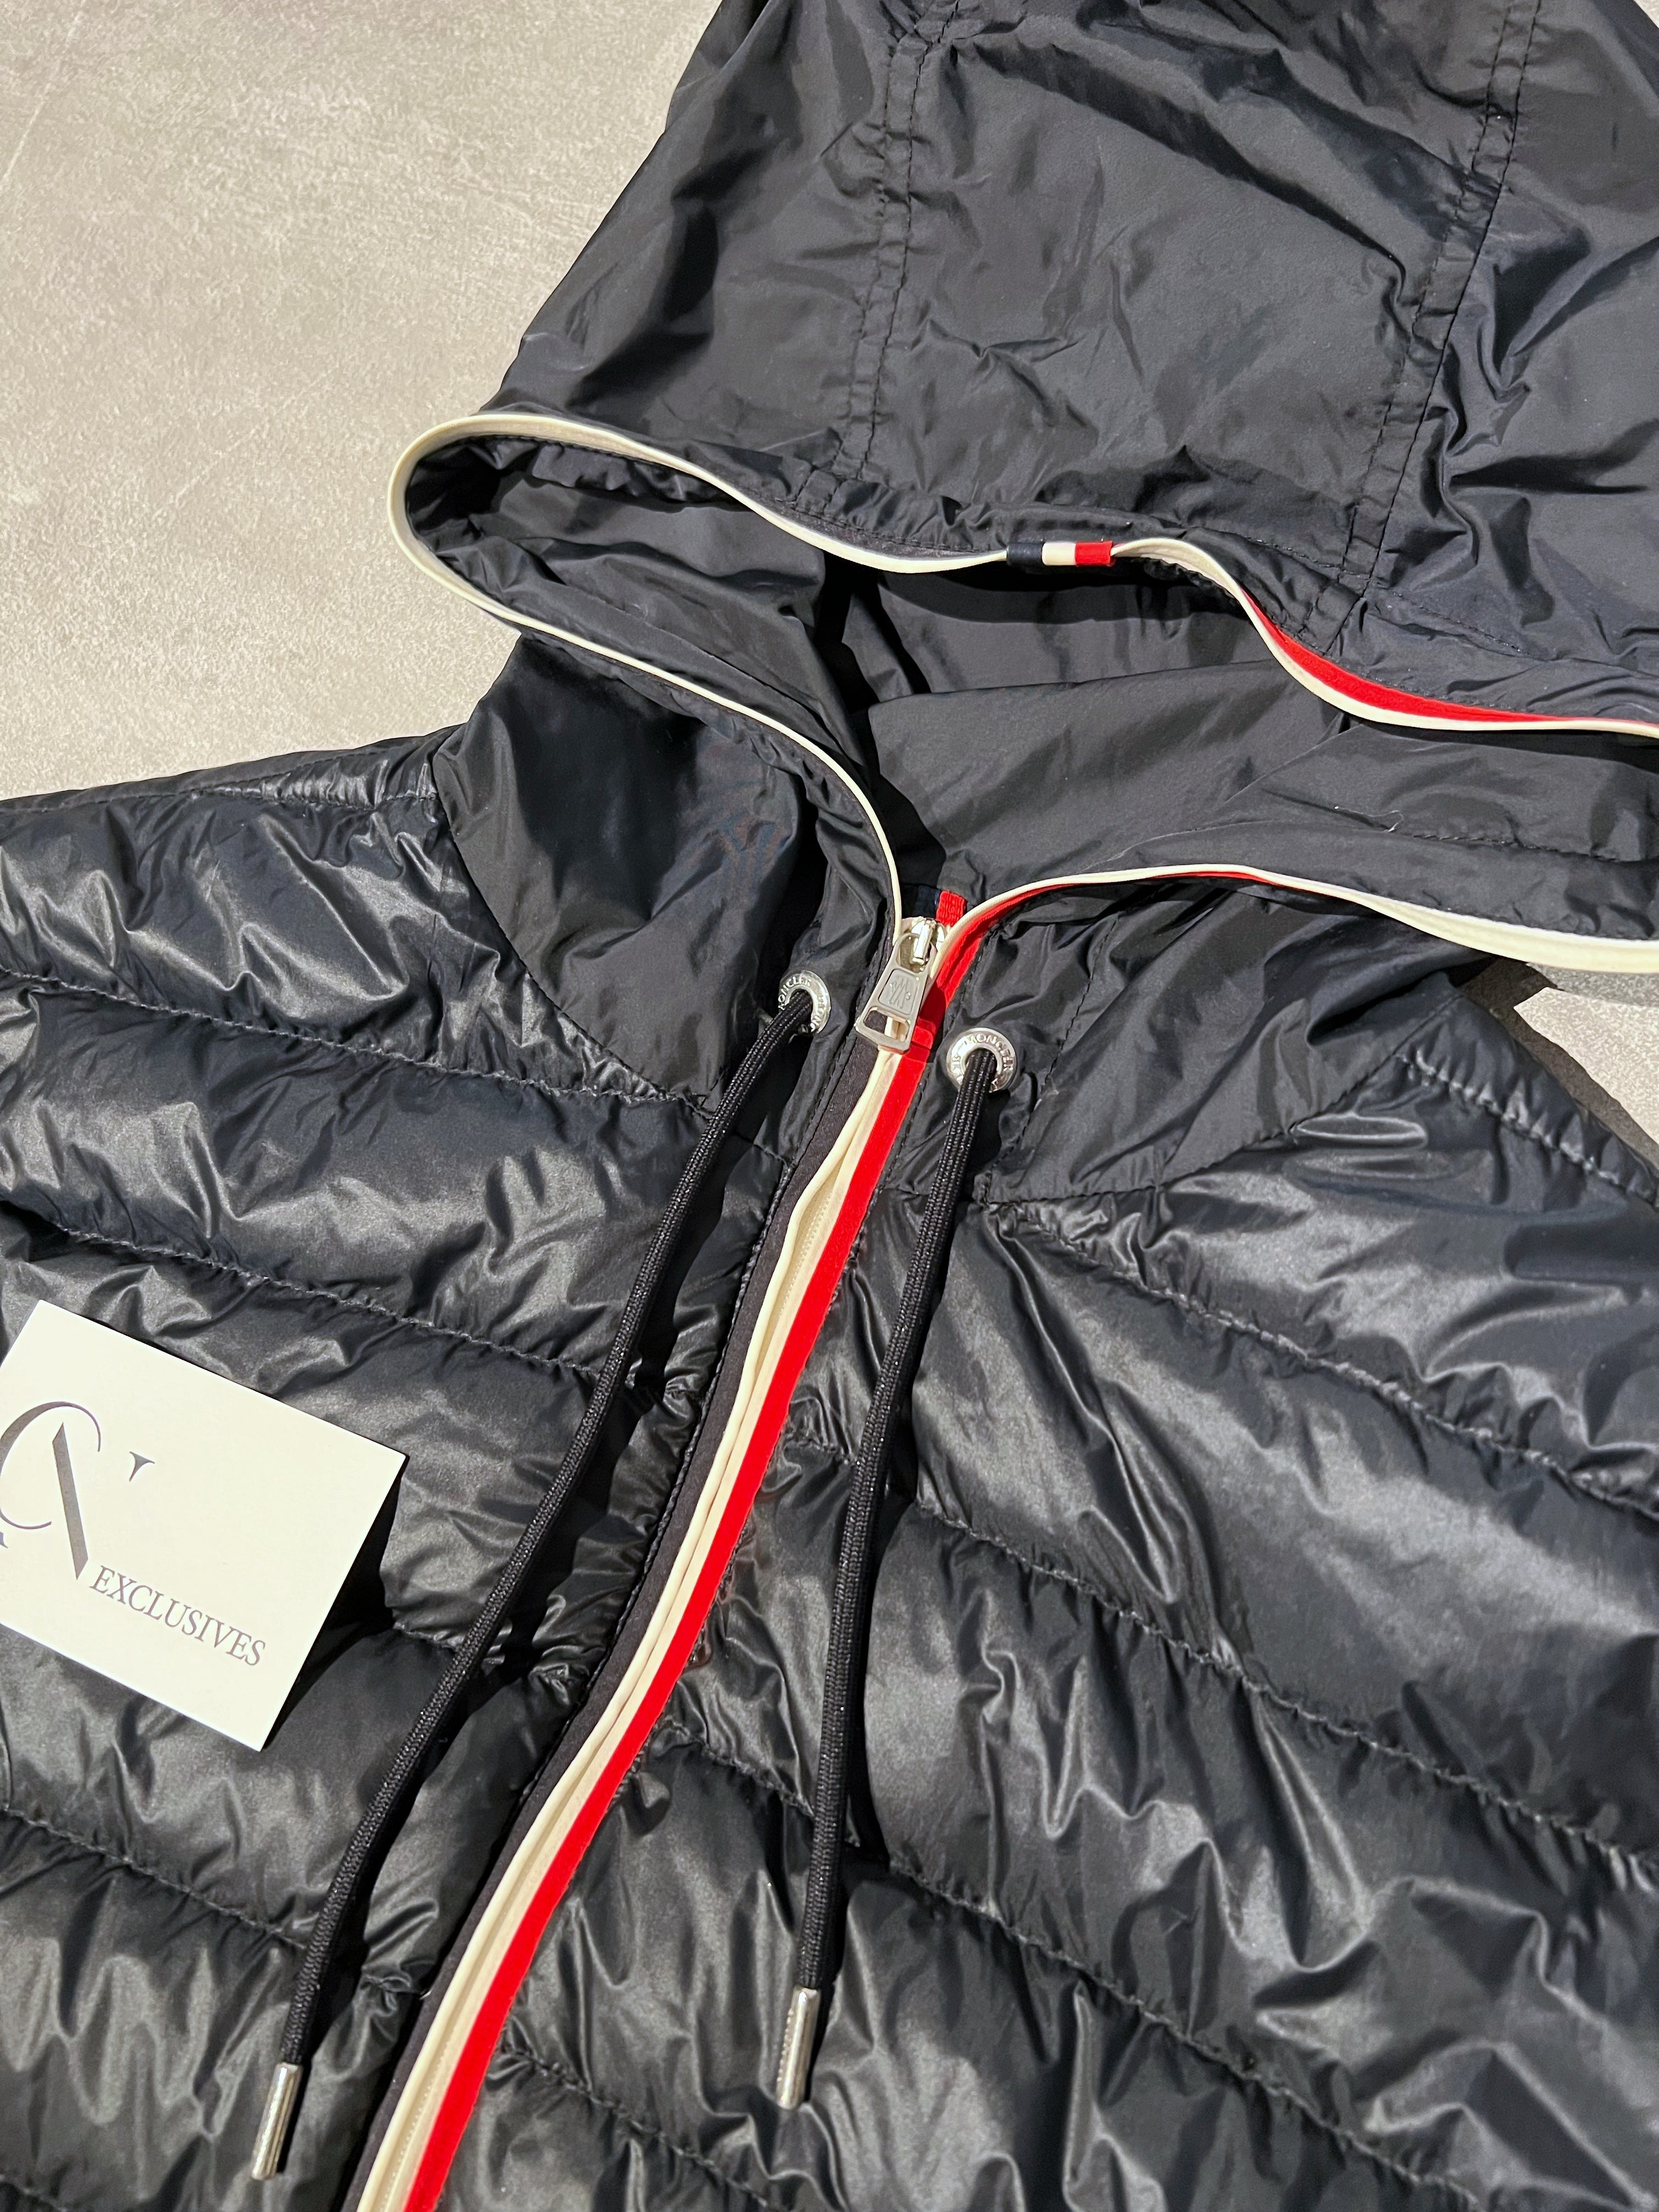 Moncler Alavoine Jacket - Size 3 (X)